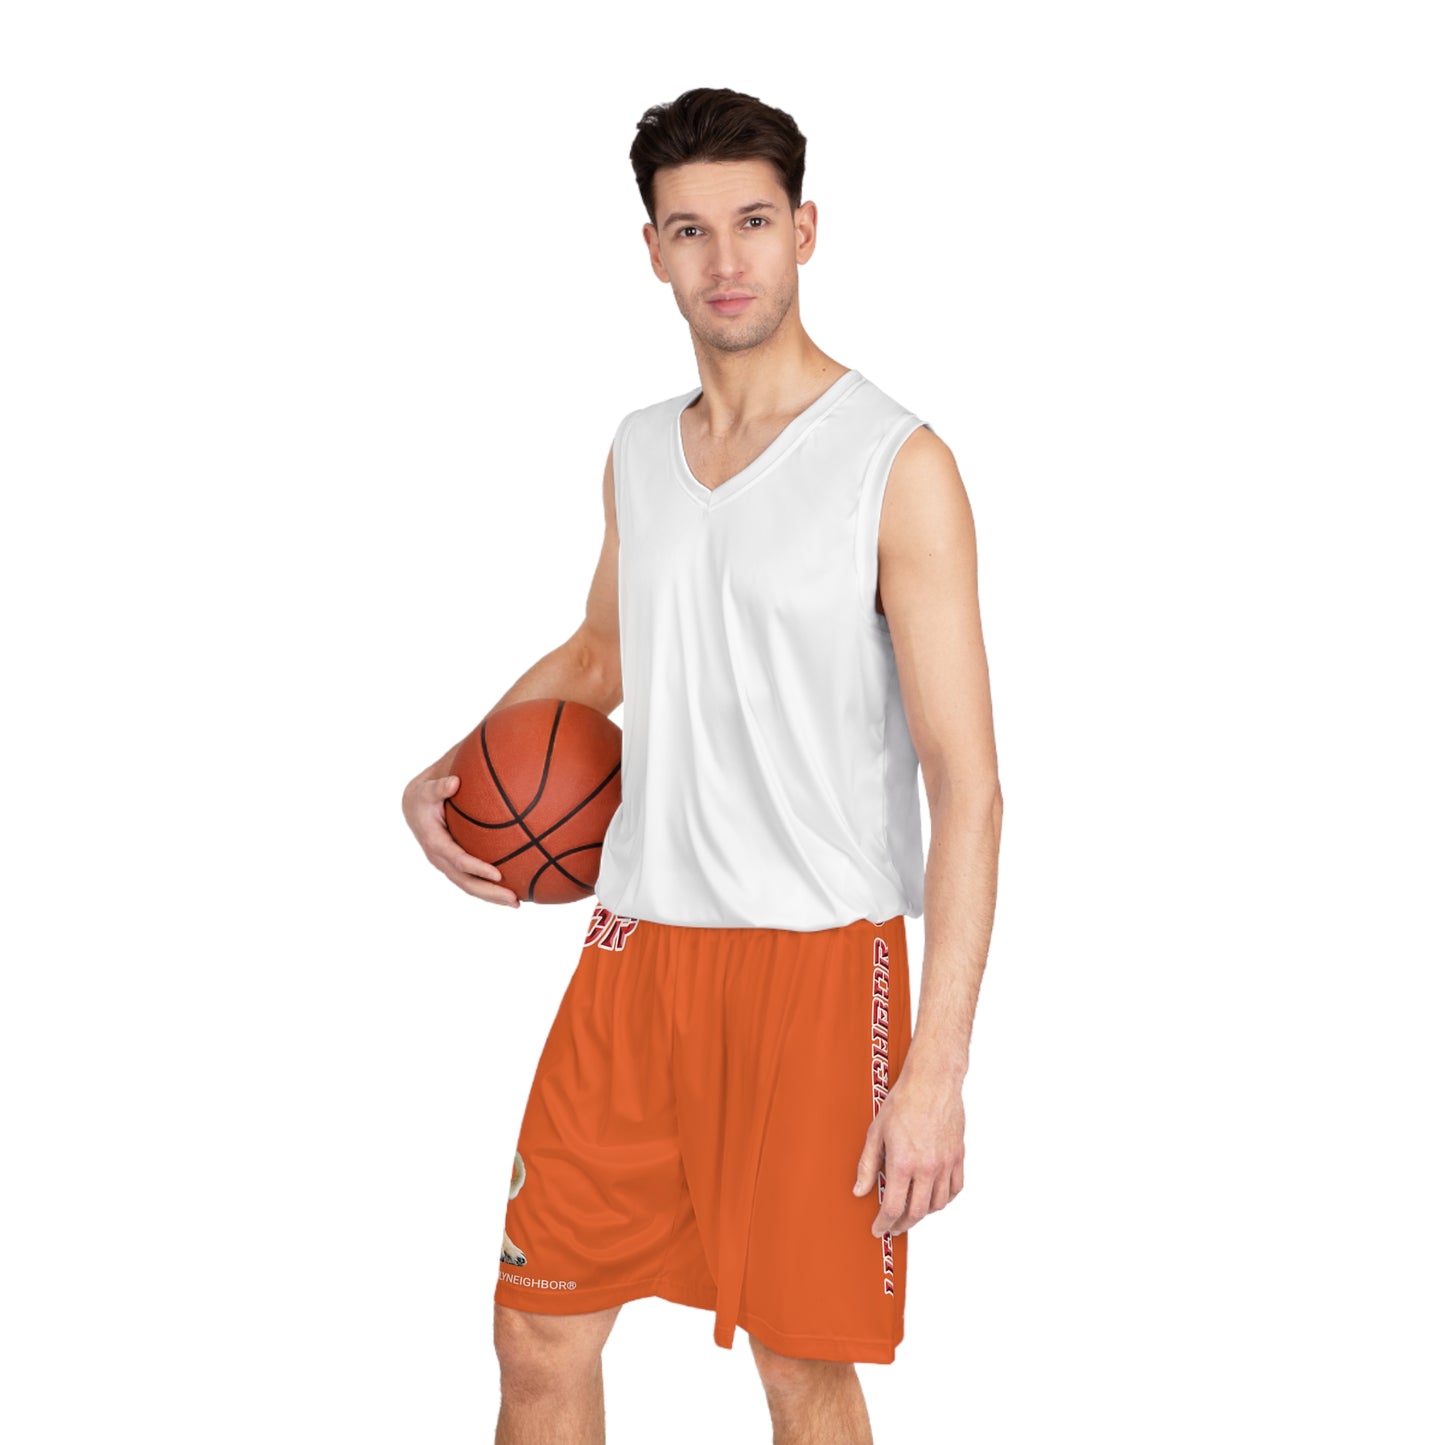 Ugly Neighbor BougieBooty Baller Shorts - Orange